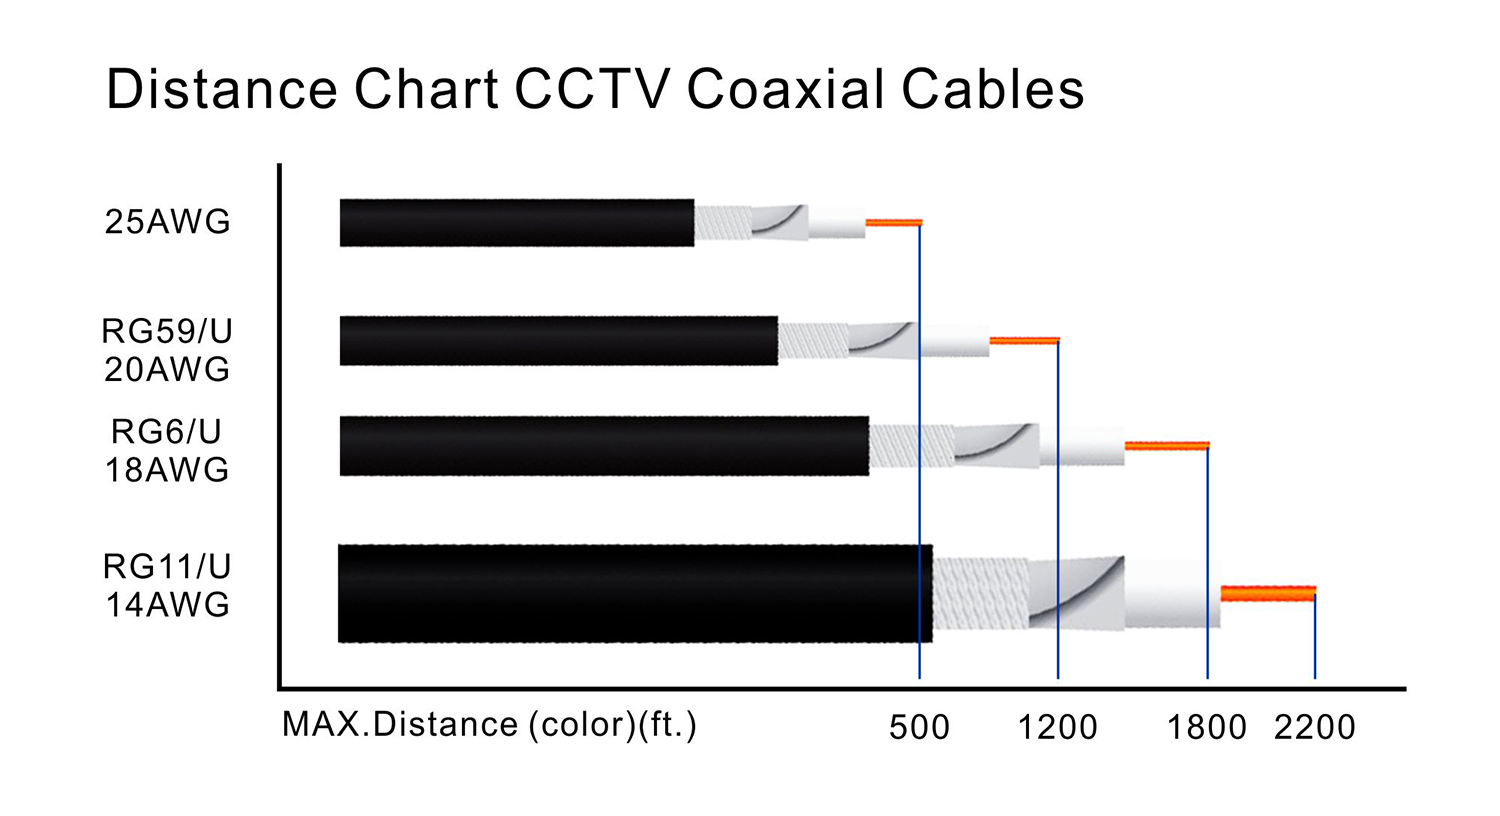 Rg59 Cable Loss Chart